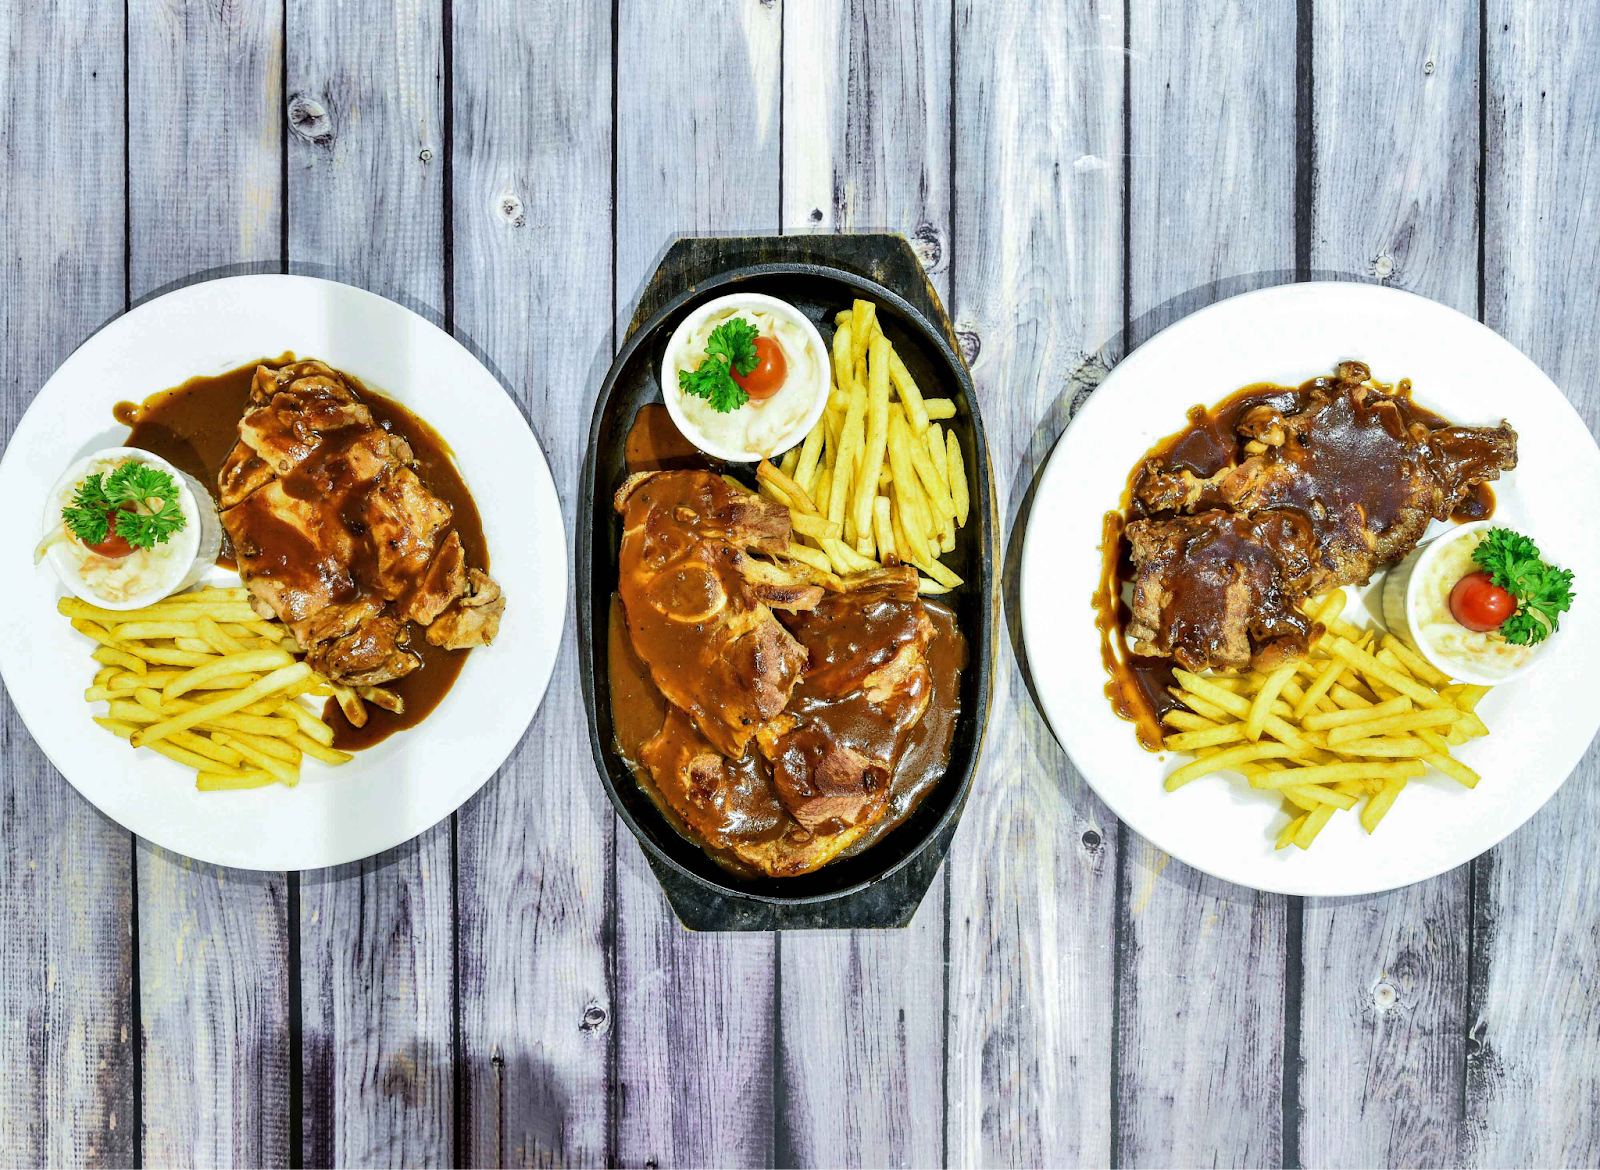 Subang Parade food